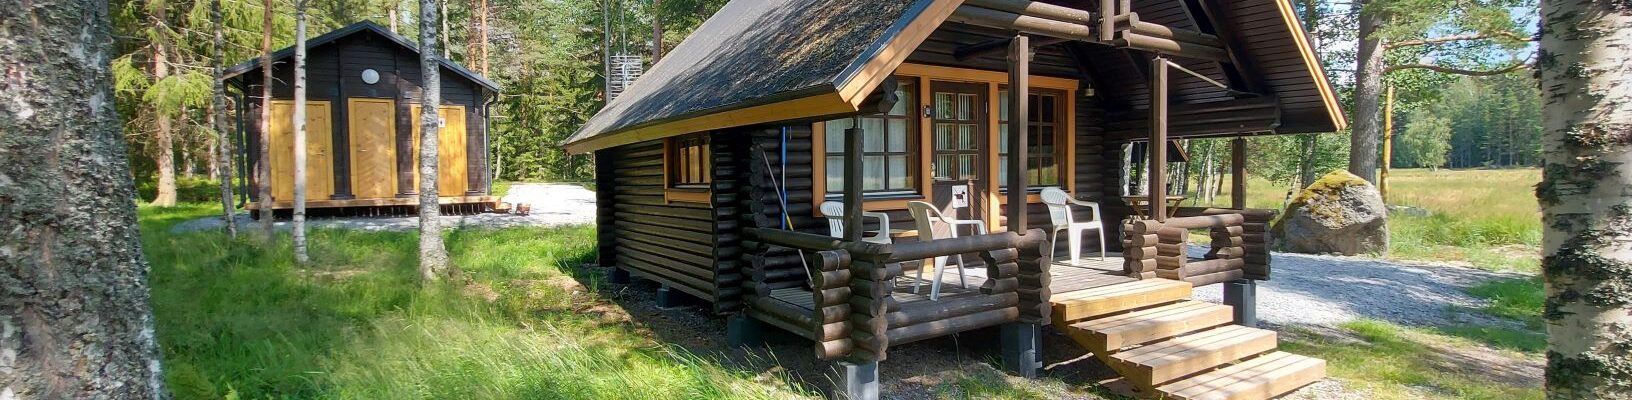 Summer cottage in Finland_Merikoivula